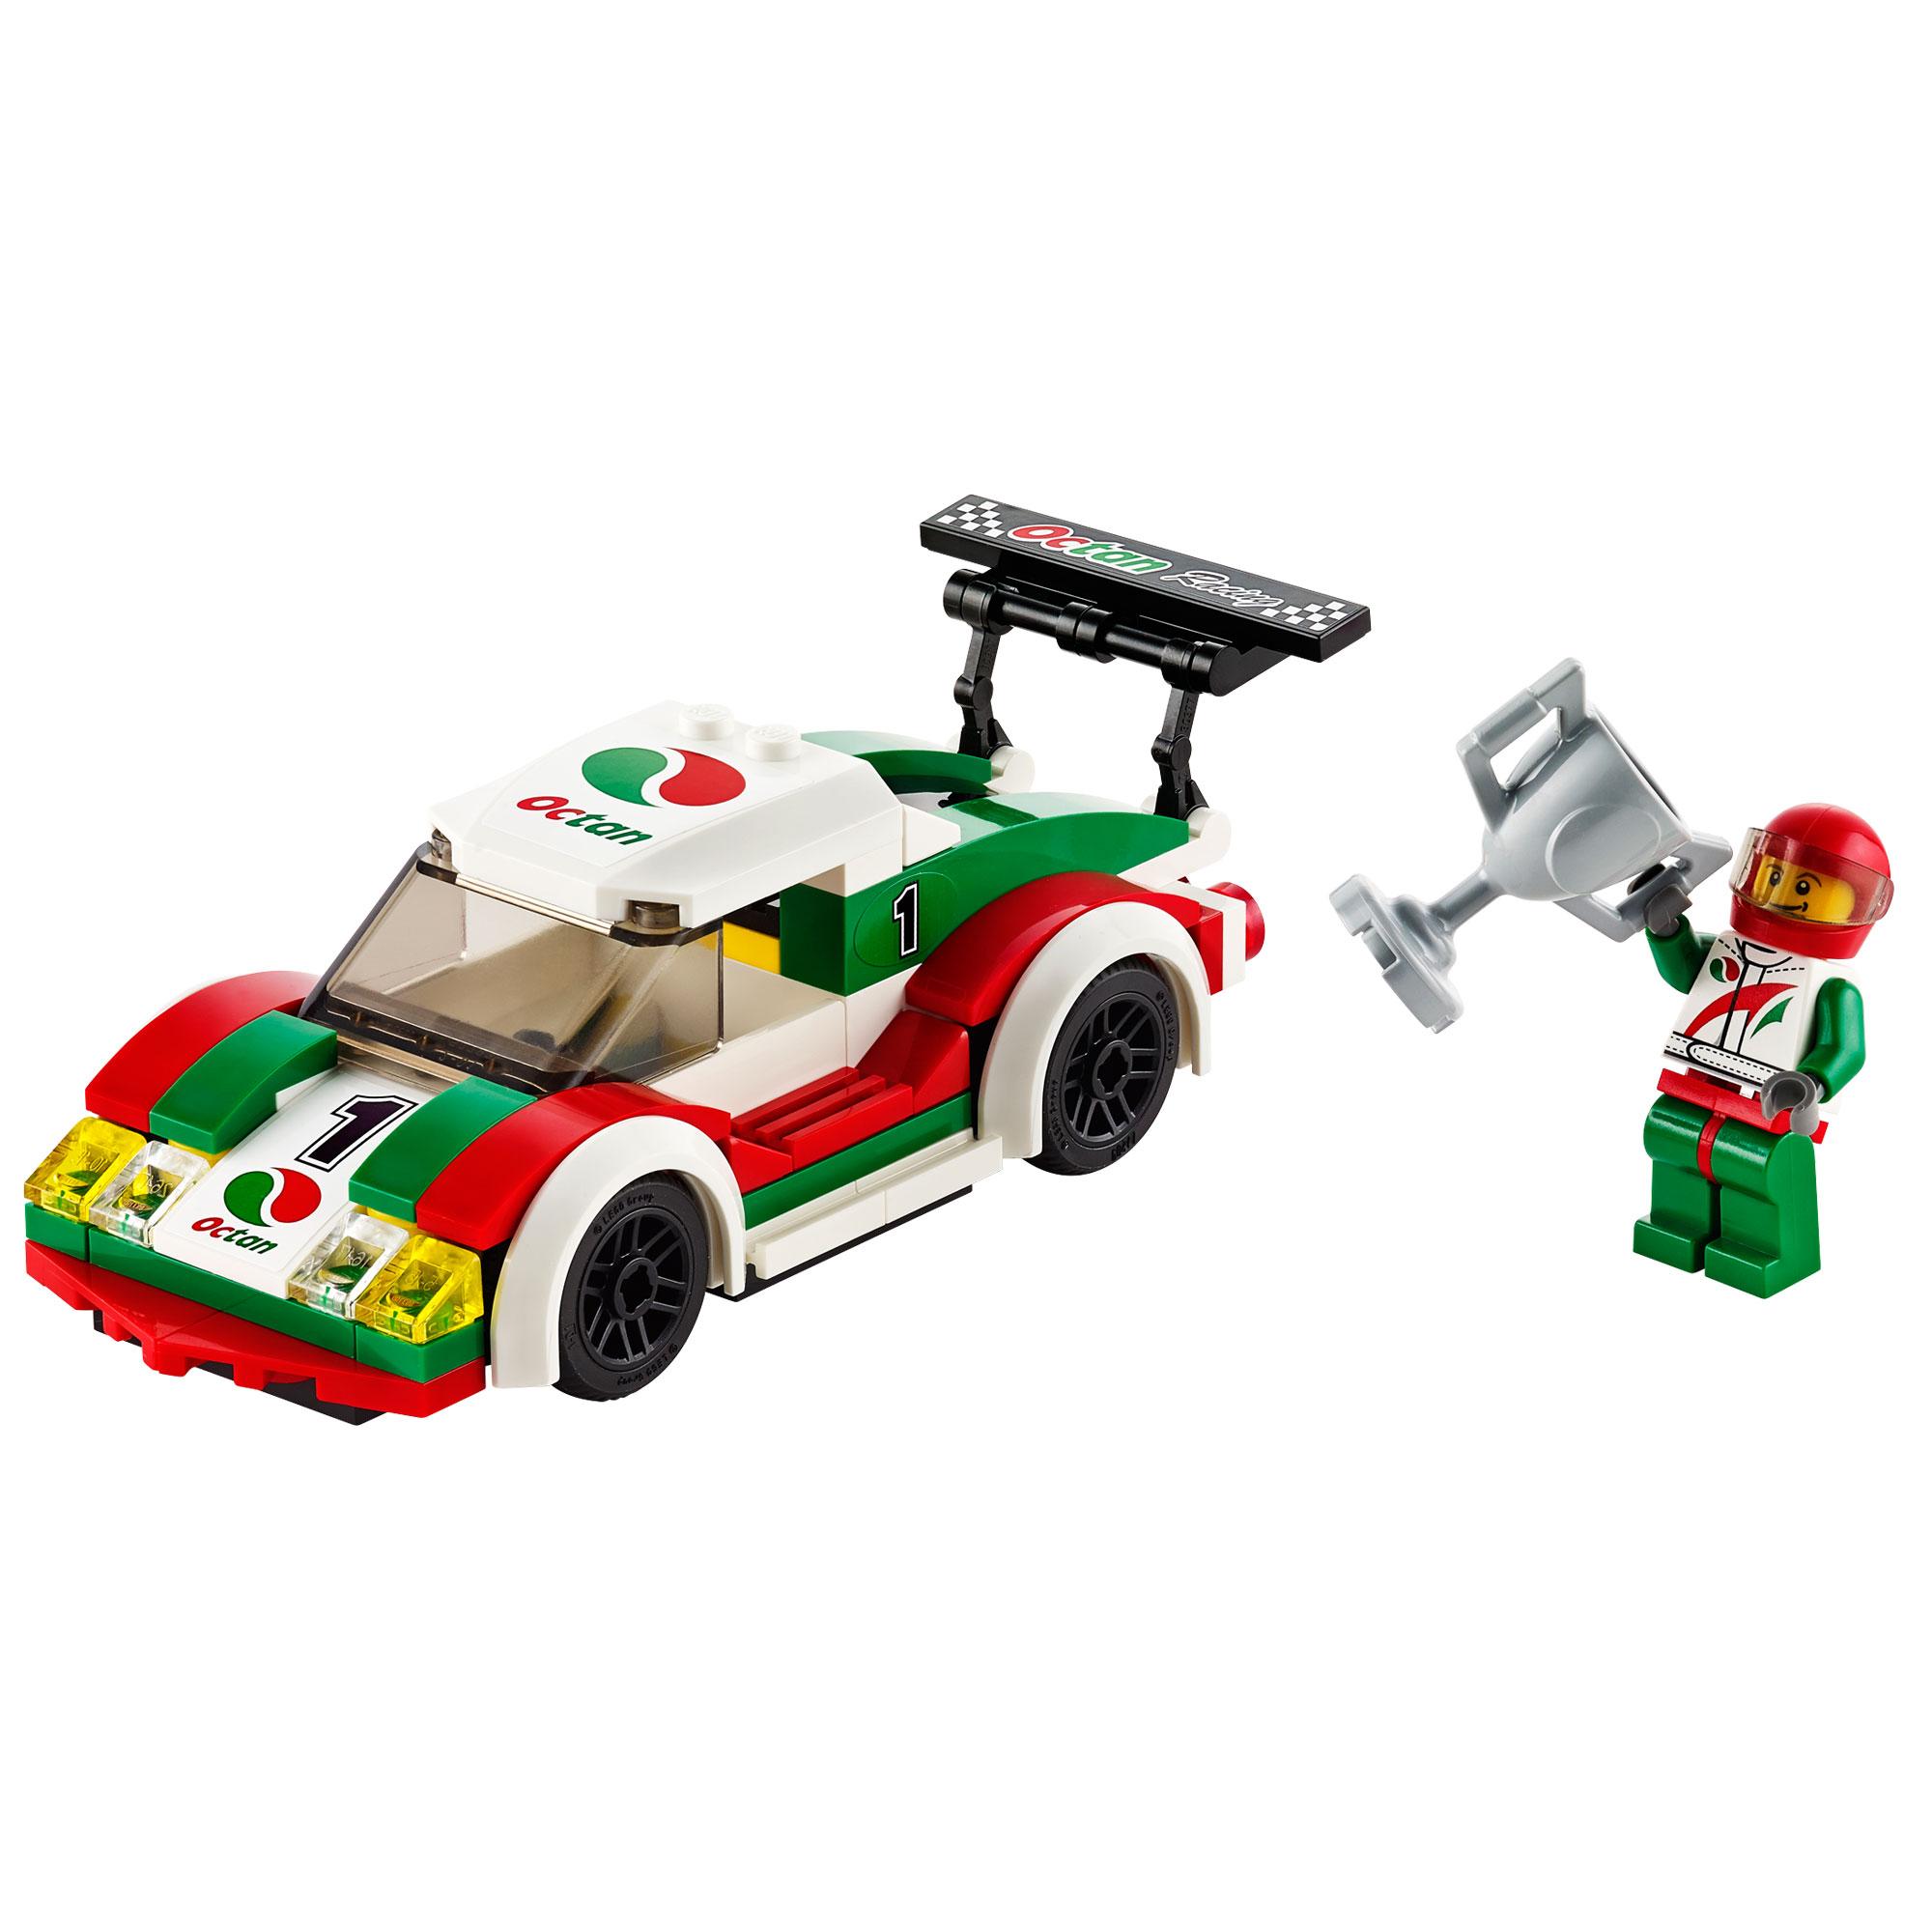  Set de constructie LEGO City Race Car 